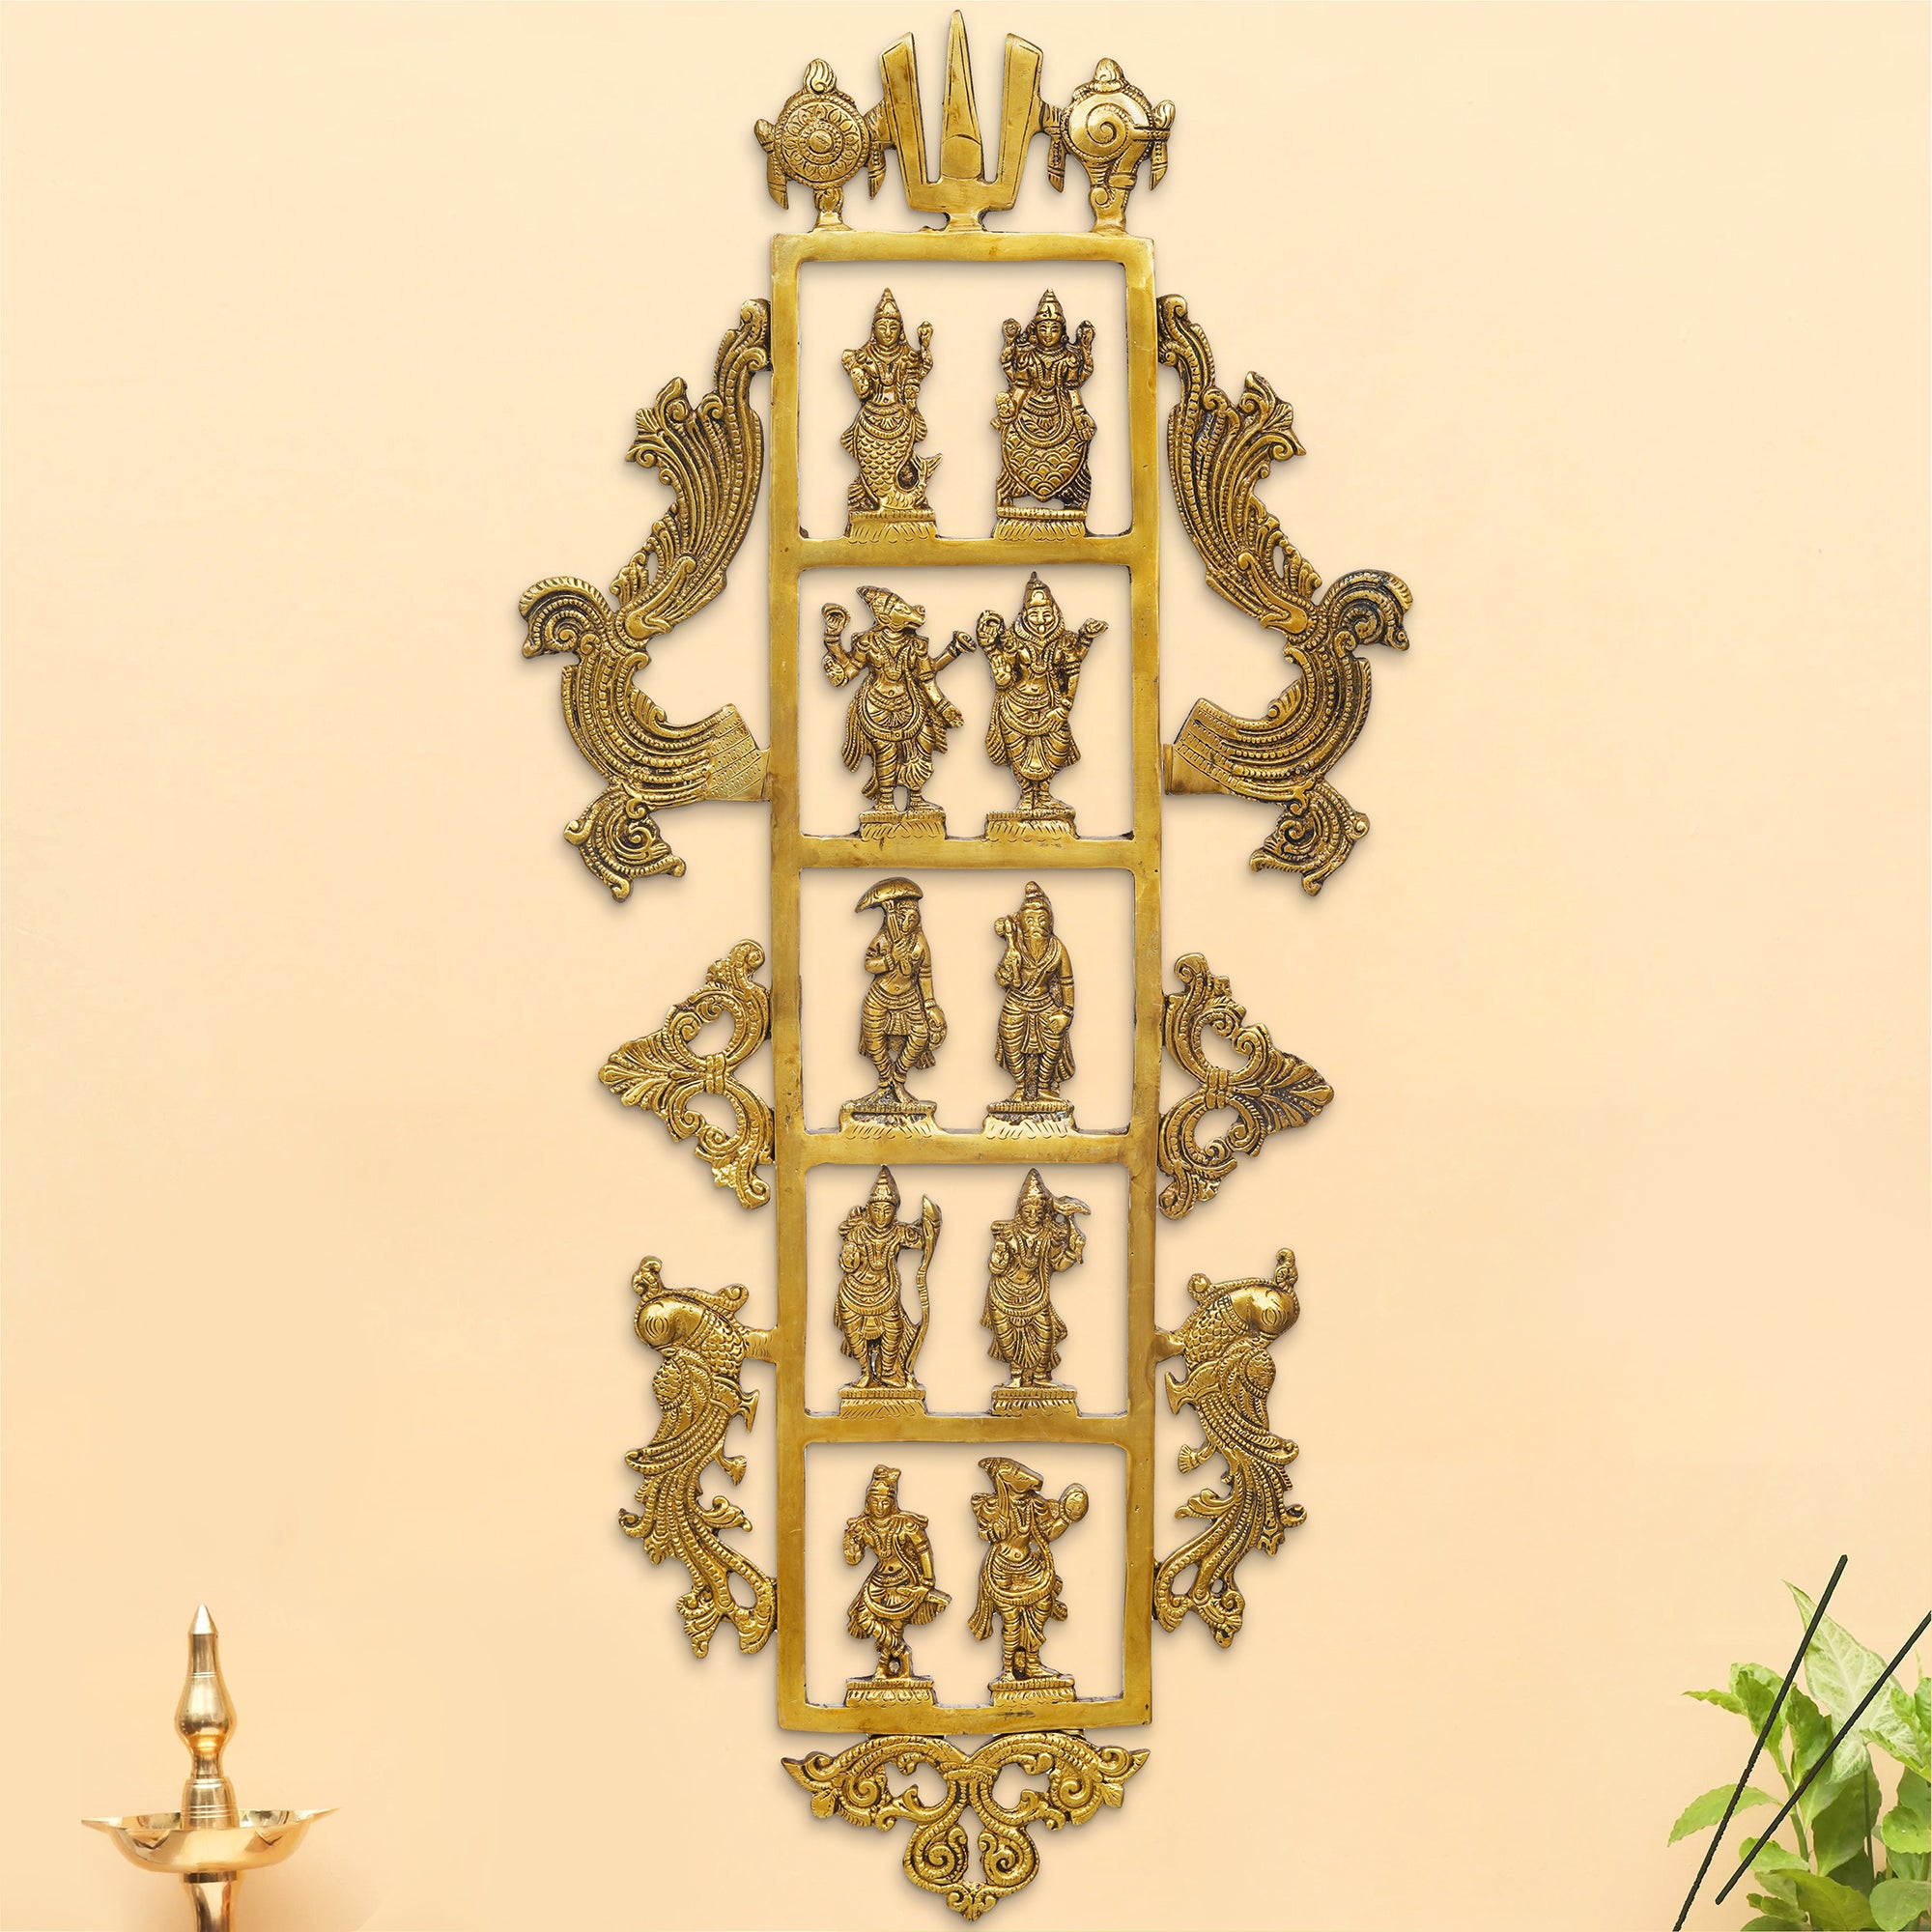 eCraftIndia Golden Brass Lord Vishnu Dashavatara - Ten Incarnations of Vishnu Religious Wall Hanging 5